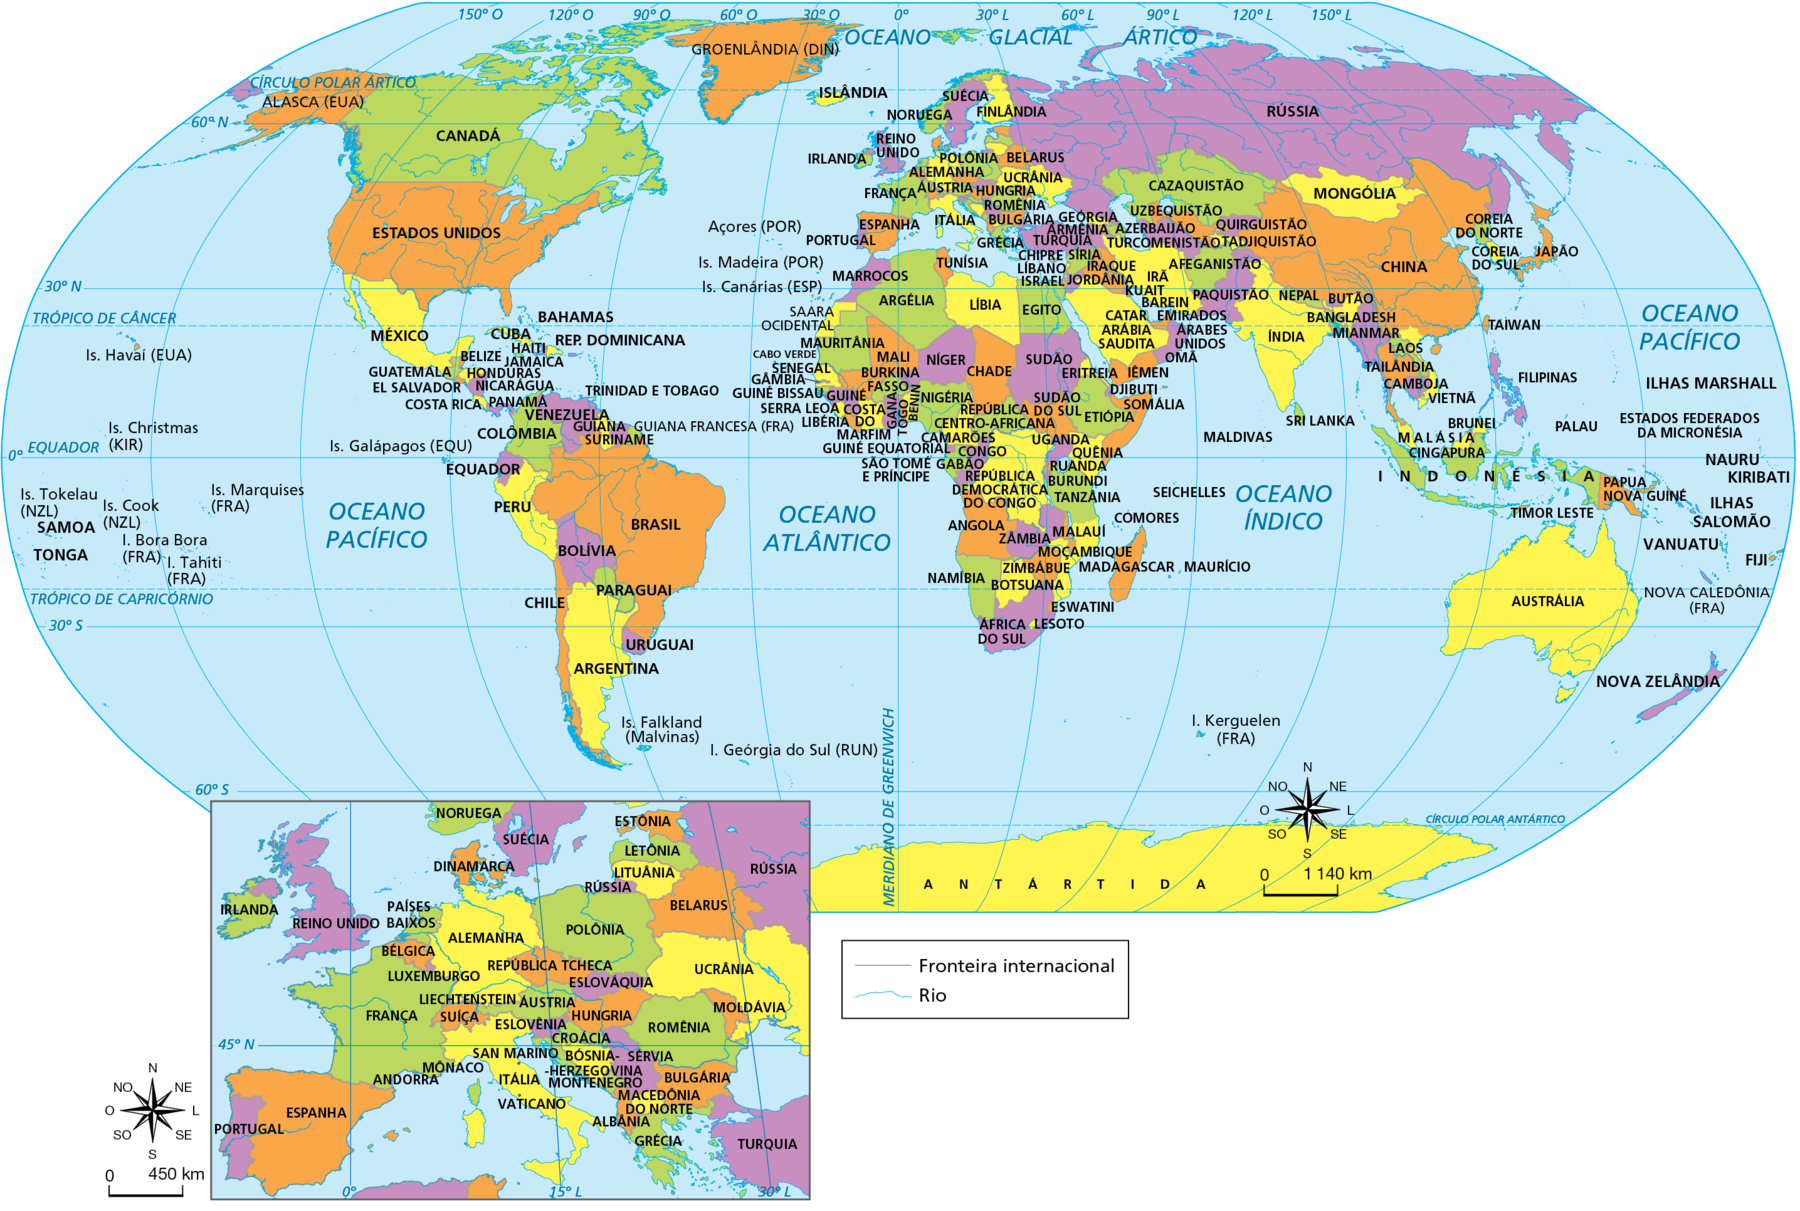 Mapa. Planisfério político. Divisão territorial de todos os países do mundo. 
Ilhas do Havaí (Estados Unidos), Ilhas Christmas (Austrália), Ilhas Tokelau (Nova Zelândia), SAMOA, TONGA, Ilhas Cook (Nova Zelândia), Ilha Tahiti (França), Ilha Bora Bora (França), Ilhas Marquises, Ilhas Galápagos (Equador), ANTÁRTIDA, Alasca (Estados Unidos), Groenlândia (Dinamarca), CANADÁ, ESTADOS UNIDOS, MÉXICO, BAHAMAS, CUBA, JAMAICA HAITI, REPÚBLICA DOMINICANA, BELIZE, GUATEMALA, HONDURAS, EL SALVADOR, NICARÁGUA, COSTA RICA, TRINIDAD E TOBAGO, PANAMÁ, VENEZUELA, GUIANA, Guiana Francesa (França), SURINAME, COLÔMBIA, EQUADOR, PERU, BRASIL, BOLÍVIA, PARAGUAI, CHILE, URUGUAI, ARGENTINA, Ilhas Falkland (Malvinas), Ilha Geórgia do Sul (Reino Unido). 
Açores (Portugal), Ilhas Madeira (Portugal), Ilhas Canárias (Espanha), ISLÂNDIA, SUÉCIA, NORUEGA, FINLÂNDIA, DINAMARCA, REINO UNIDO, PAÍSES BAIXOS, BÉLGICA, LUXEMBURGO, LIECHTENSTEIN, SUÍÇA, IRLANDA, PORTUGAL, ESPANHA, FRANÇA, ANDORRA, MÔNACO, SAN MARINO, ITÁLIA, VATICANO, ESTÔNIA, LETÔNIA, LITUÂNIA, RÚSSIA, POLÔNIA, ALEMANHA, REPÚBLICA TCHECA, ÁUSTRIA, ESLOVÁQUIA, HUNGRIA, ESLOVÊNIA, CROÁCIA, BÓSNIA-HERZEGOVINA, SÉRVIA, MONTENEGRO, MACEDÔNIA DO NORTE, ALBÂNIA, GRÉCIA, TURQUIA, BULGÁRIA, ROMÊNIA, MOLDÁVIA, UCRÂNIA, BELARUS, CHIPRE, LÍBANO, ISRAEL, SÍRIA, IRAQUE, JORDÂNIA, KUAIT, BAREIN, CATAR, ARÁBIA SAUDITA, IÊMEM, OMÃ, EMIRADOS ÁRABES UNIDOS, IRÃ, AFEGANISTÃO, GEÓRGIA, ARMÊNIA, AZERBAIJÃO, TURCOMENISTÃO, CAZAQUISTÃO, UZBEQUISTÃO, QUIRGUISTÃO, TADJIQUISTÃO, PAQUISTÃO, ÍNDIA, MALDIVAS, SRI LANKA, NEPAL, BUTÃO, BANGLADESH, MIANMAR, LAOS, TAILÂNDIA, CAMBOJA, VIETNÃ, CHINA, MONGÓLIA, COREIA DO NORTE, COREIA DO SUL, JAPÃO, TAIWAN, FILIPINAS, PALAU, BRUNEI, MALÁSIA, CINGAPURA, INDONÉSIA, TIMOR LESTE, PAPUA NOVA GUINÉ, ILHAS MARSHALL, ESTADOS FEDERADOS DA MICRONÉSIA, NAURU, KIRIBATI, ILHAS SALOMÃO, VANUATU, FIJI, Nova Caledônia (França), AUSTRÁLIA, NOVA ZELÂNDIA, SAARA OCIDENTAL, MARROCOS, TUNÍSIA, MAURITÂNIA, ARGÉLIA, LÍBIA, EGITO, CABO VERDE, SENEGAL, GÂMBIA, GUINÉ BISSAU, MALI, NÍGER, CHADE, SUDÃO, ERITREIA, DJIBUTI, GUINÉ, SERRA LEOA, LIBÉRIA, COSTA DO MARFIM, BURKINA FASSO, GANA, TOGO, BENIM, NIGÉRIA, GUINÉ EQUATORIAL, SÃO TOMÉ E PRÍNCIPE, CAMARÕES, REPÚBLICA CENTRO AFRICANA, GABÃO, CONGO, REPÚBLICA DEMOCRÁTICA DO CONGO, SUDÃO DO SUL, UGANDA, ETIÓPIA, SOMÁLIA, QUÊNIA, RUANDA, BURUNDI, TANZÂNIA, ANGOLA, ZÂMBIA, MALAUÍ, COMORES, SEICHELLS, NAMÍBIA, ZIMBABUE, BOTSUANA, MOÇAMBIQUE, MADAGASCAR, MAURÍCIO, ESWATINI, ÁFRICA DO SUL, LESOTO, Ilha Kerguelen (França).